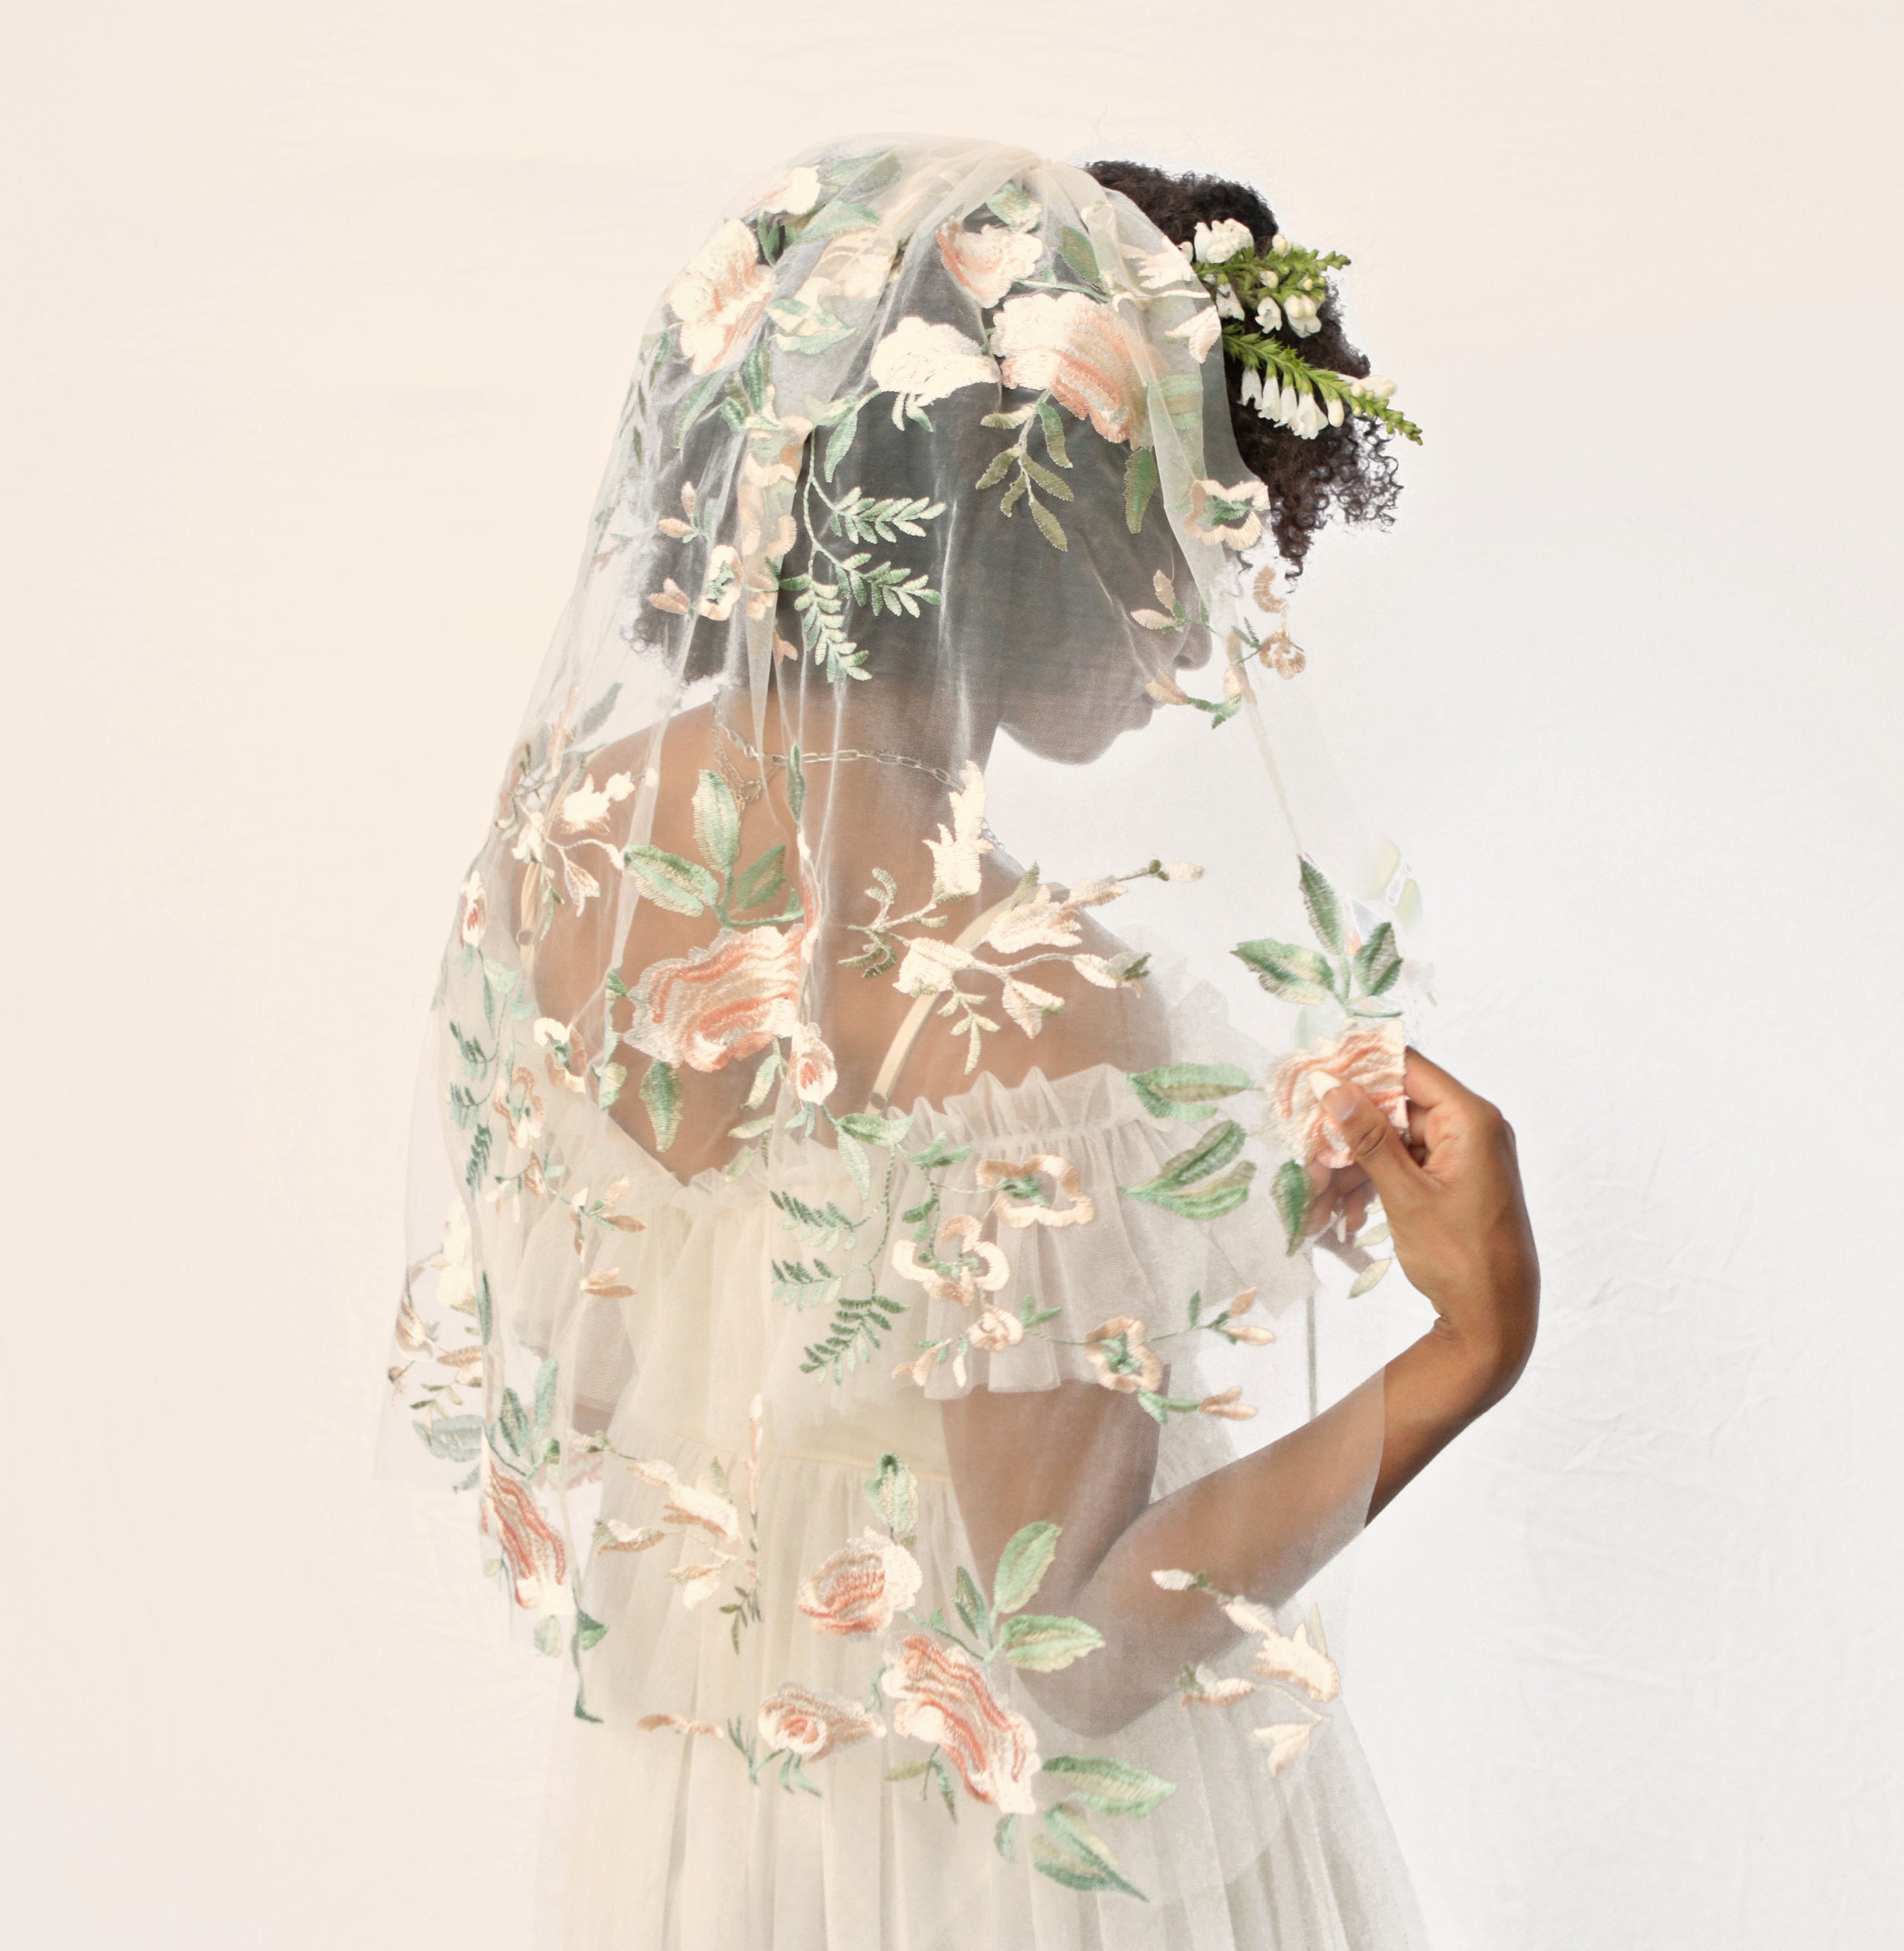 Romantic Bridal Veil with Floral Details